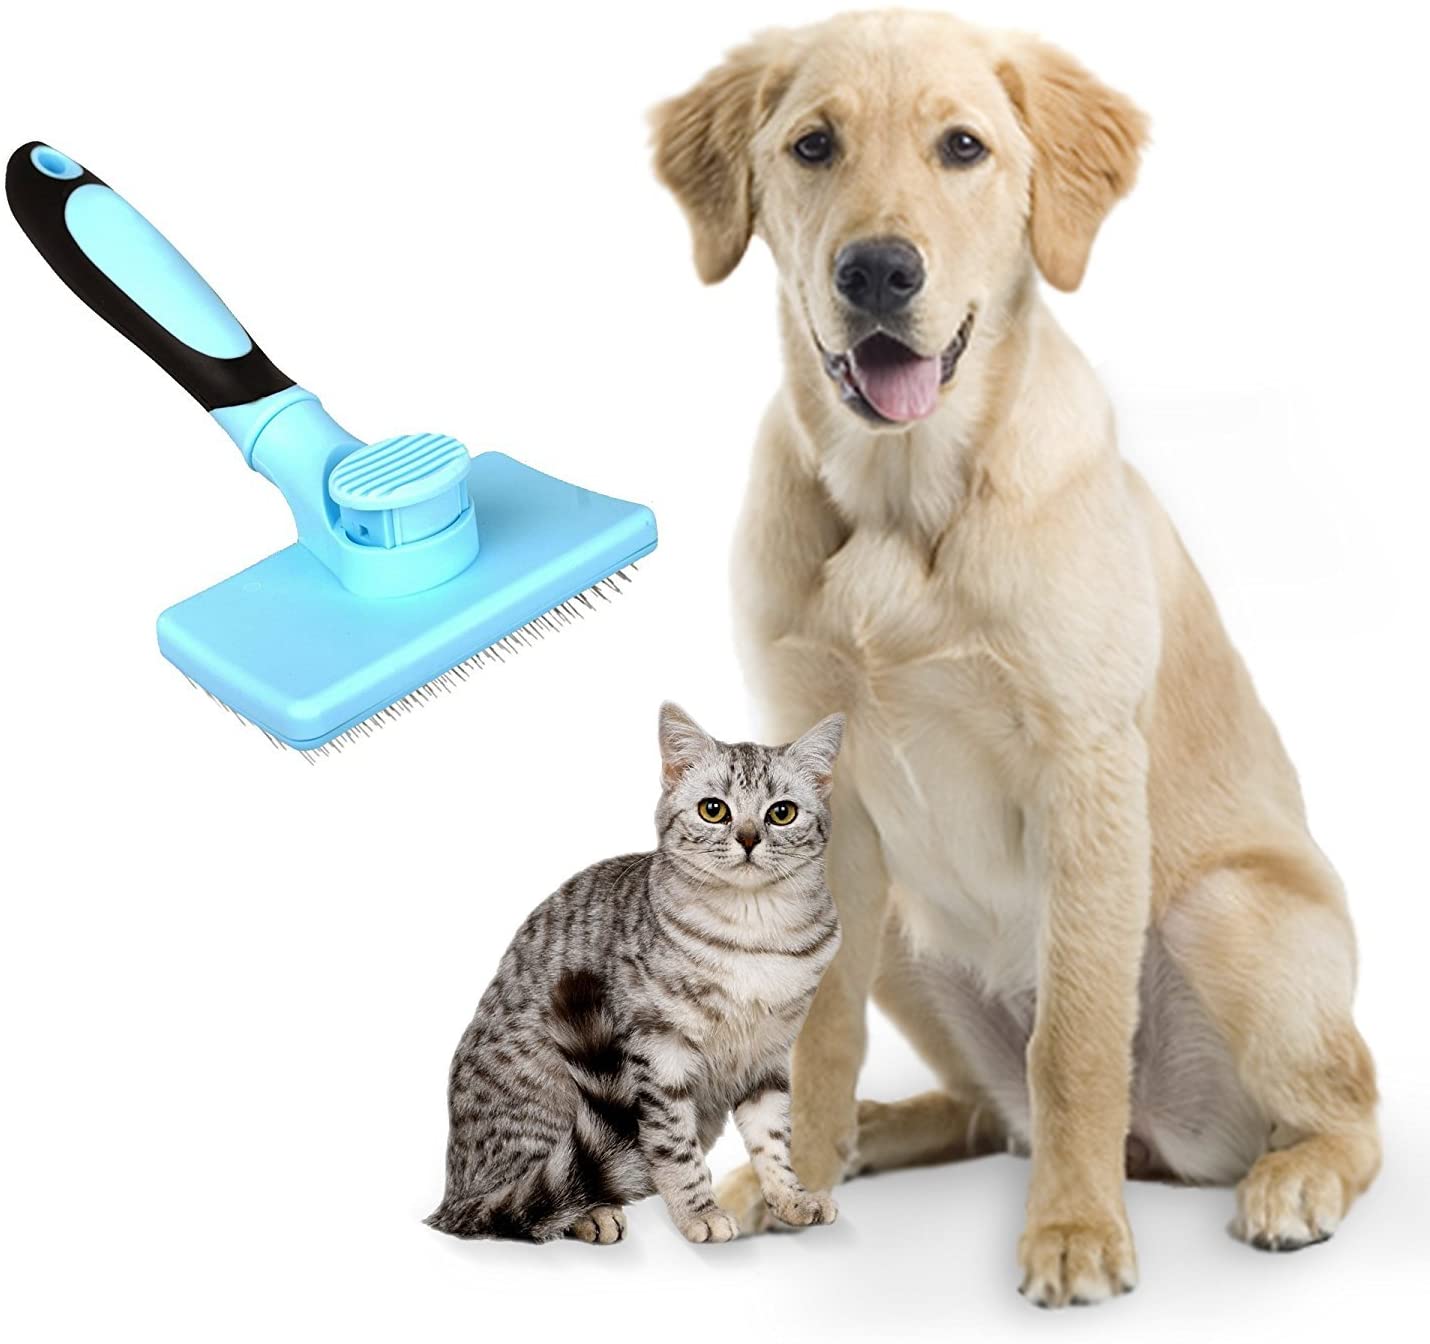  DakPets Pinceles para Perros Slicker, Cepillo de Limpieza para Mascotas – Elimina el 90% de los pelos Sueltos y Sueltos, Apto para Perros y Gatos de Pelo Mediano y Largo 